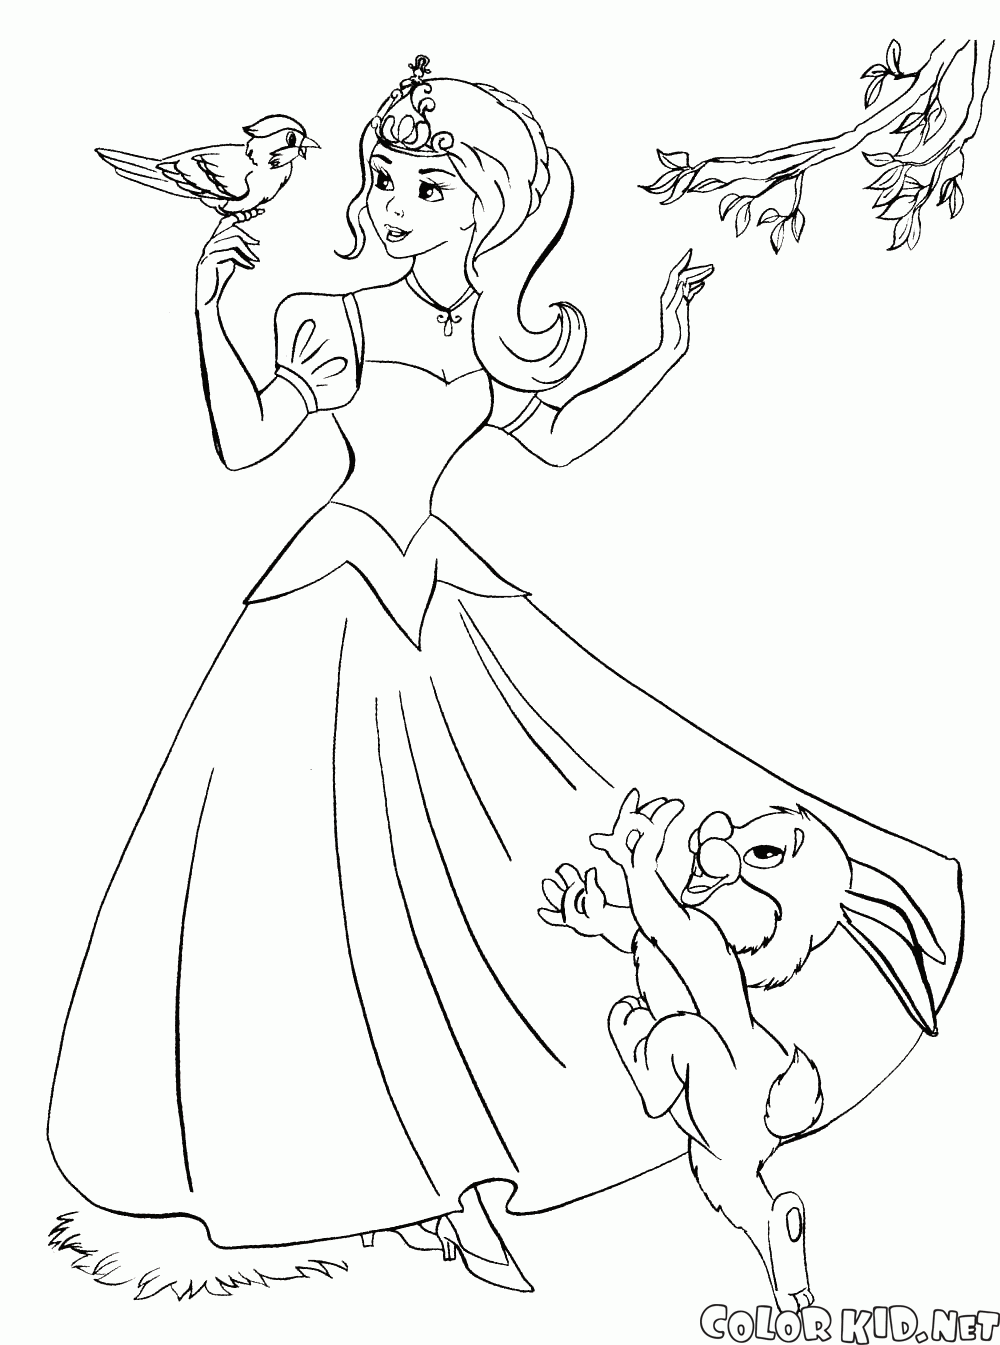 Dibujo para colorear - La princesa y los buenos animales